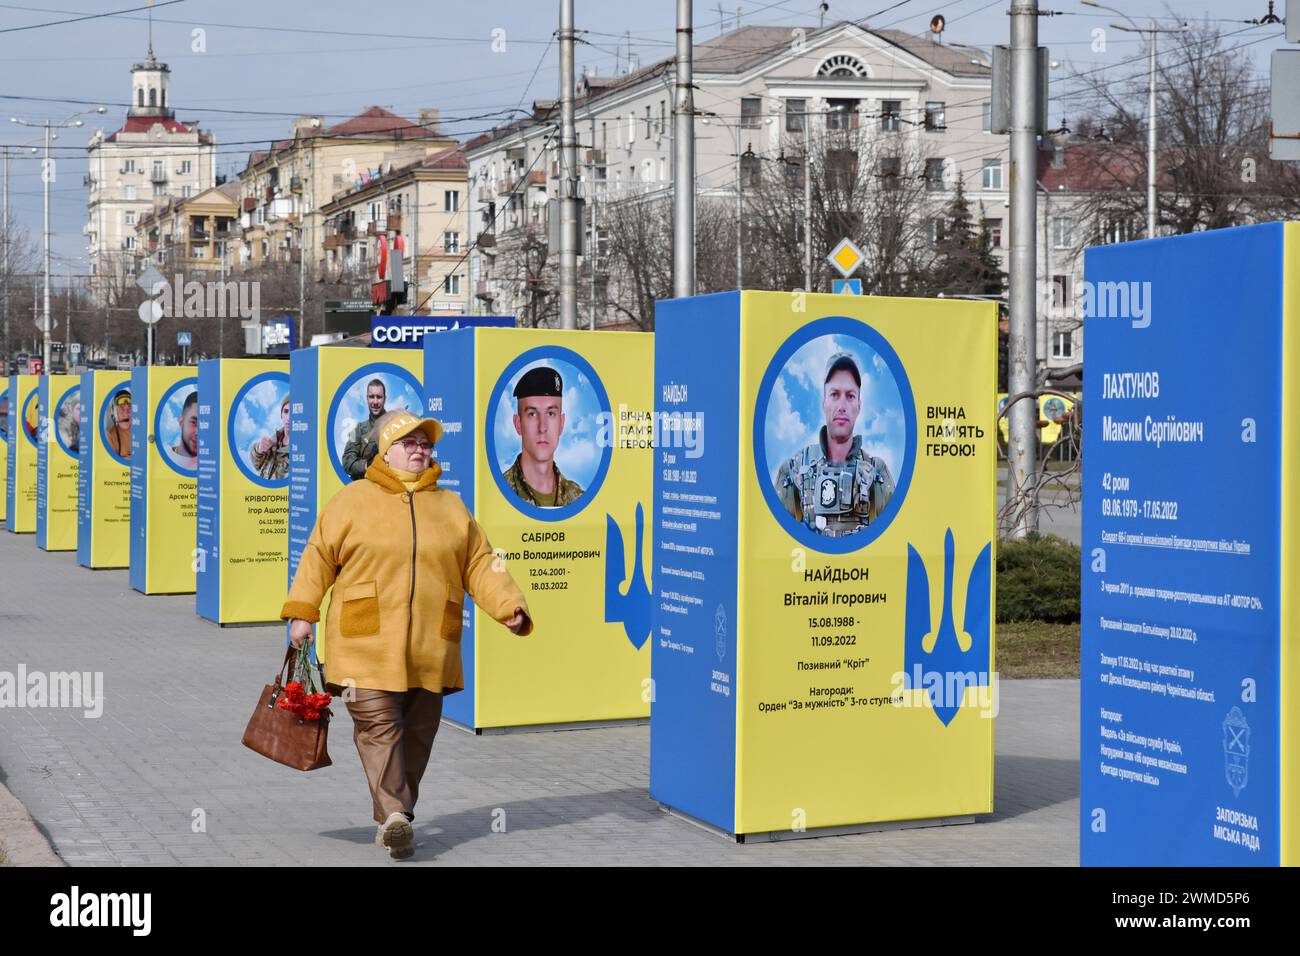 Une femme âgée passe devant des stands de portraits de soldats ukrainiens tombés au combat dans le centre de Zaporizhzhia. Le président ukrainien Volodymyr Zelensky a marqué le deuxième anniversaire de l'invasion russe en déclarant que son pays "réussira". L'Ukraine a défié les prédictions de combattre la Russie, mais il y a des signes que la guerre tourne en faveur de la Russie. Le gouvernement ukrainien a cessé de partager le nombre de ses militaires morts il y a longtemps. Mais le nombre toujours croissant de tombes fraîches, des deux côtés des lignes de front, dresse un tableau douloureusement clair. Banque D'Images